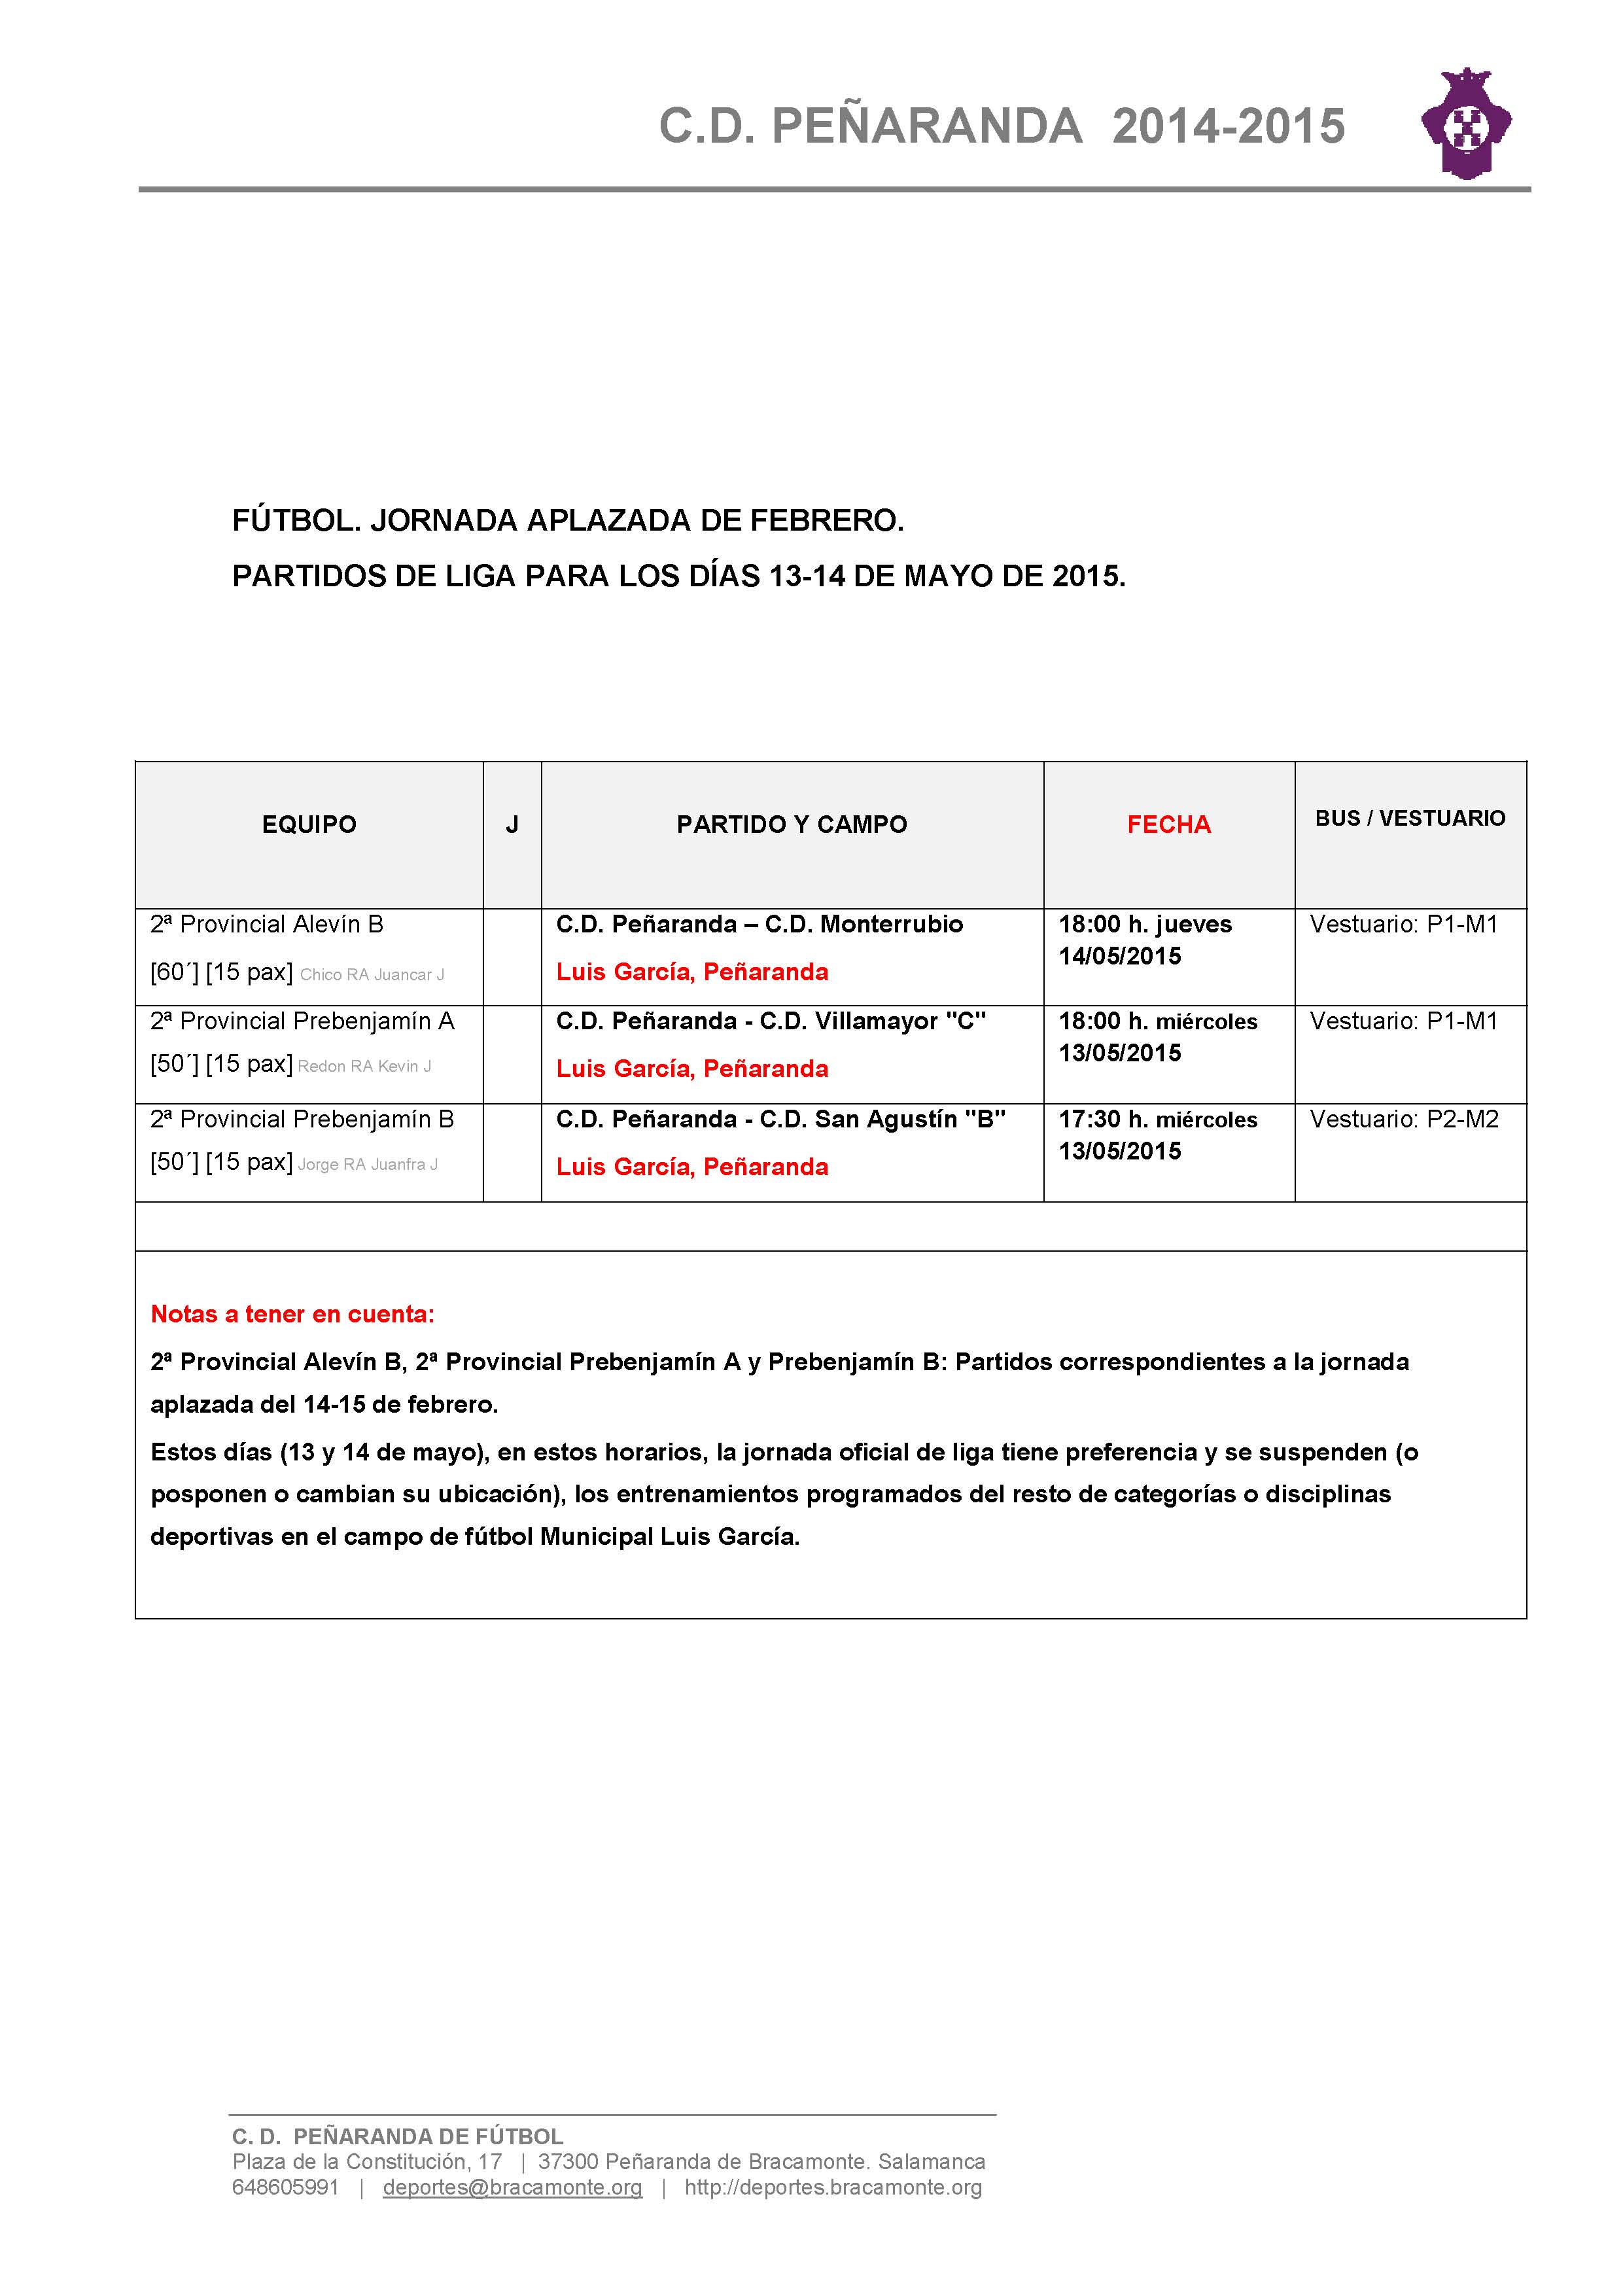 CDP-Horarios-Partidos-Jornada-20150513-completo